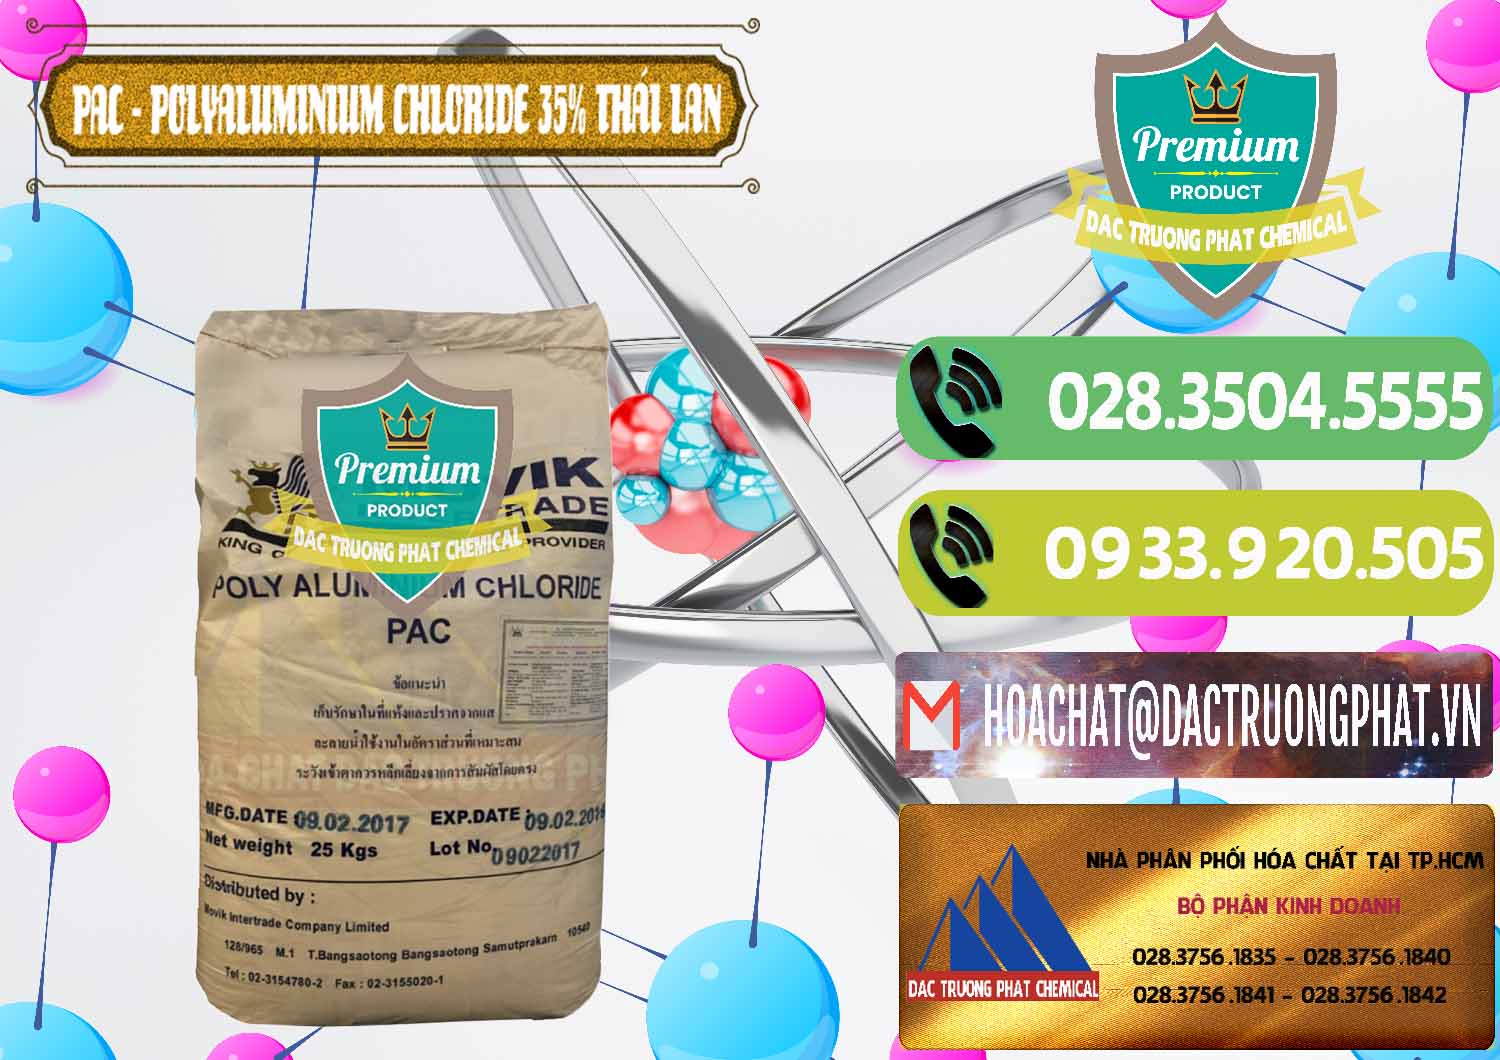 Cty chuyên kinh doanh và bán PAC - Polyaluminium Chloride 35% Thái Lan Thailand - 0470 - Chuyên phân phối và cung cấp hóa chất tại TP.HCM - hoachatmientay.vn